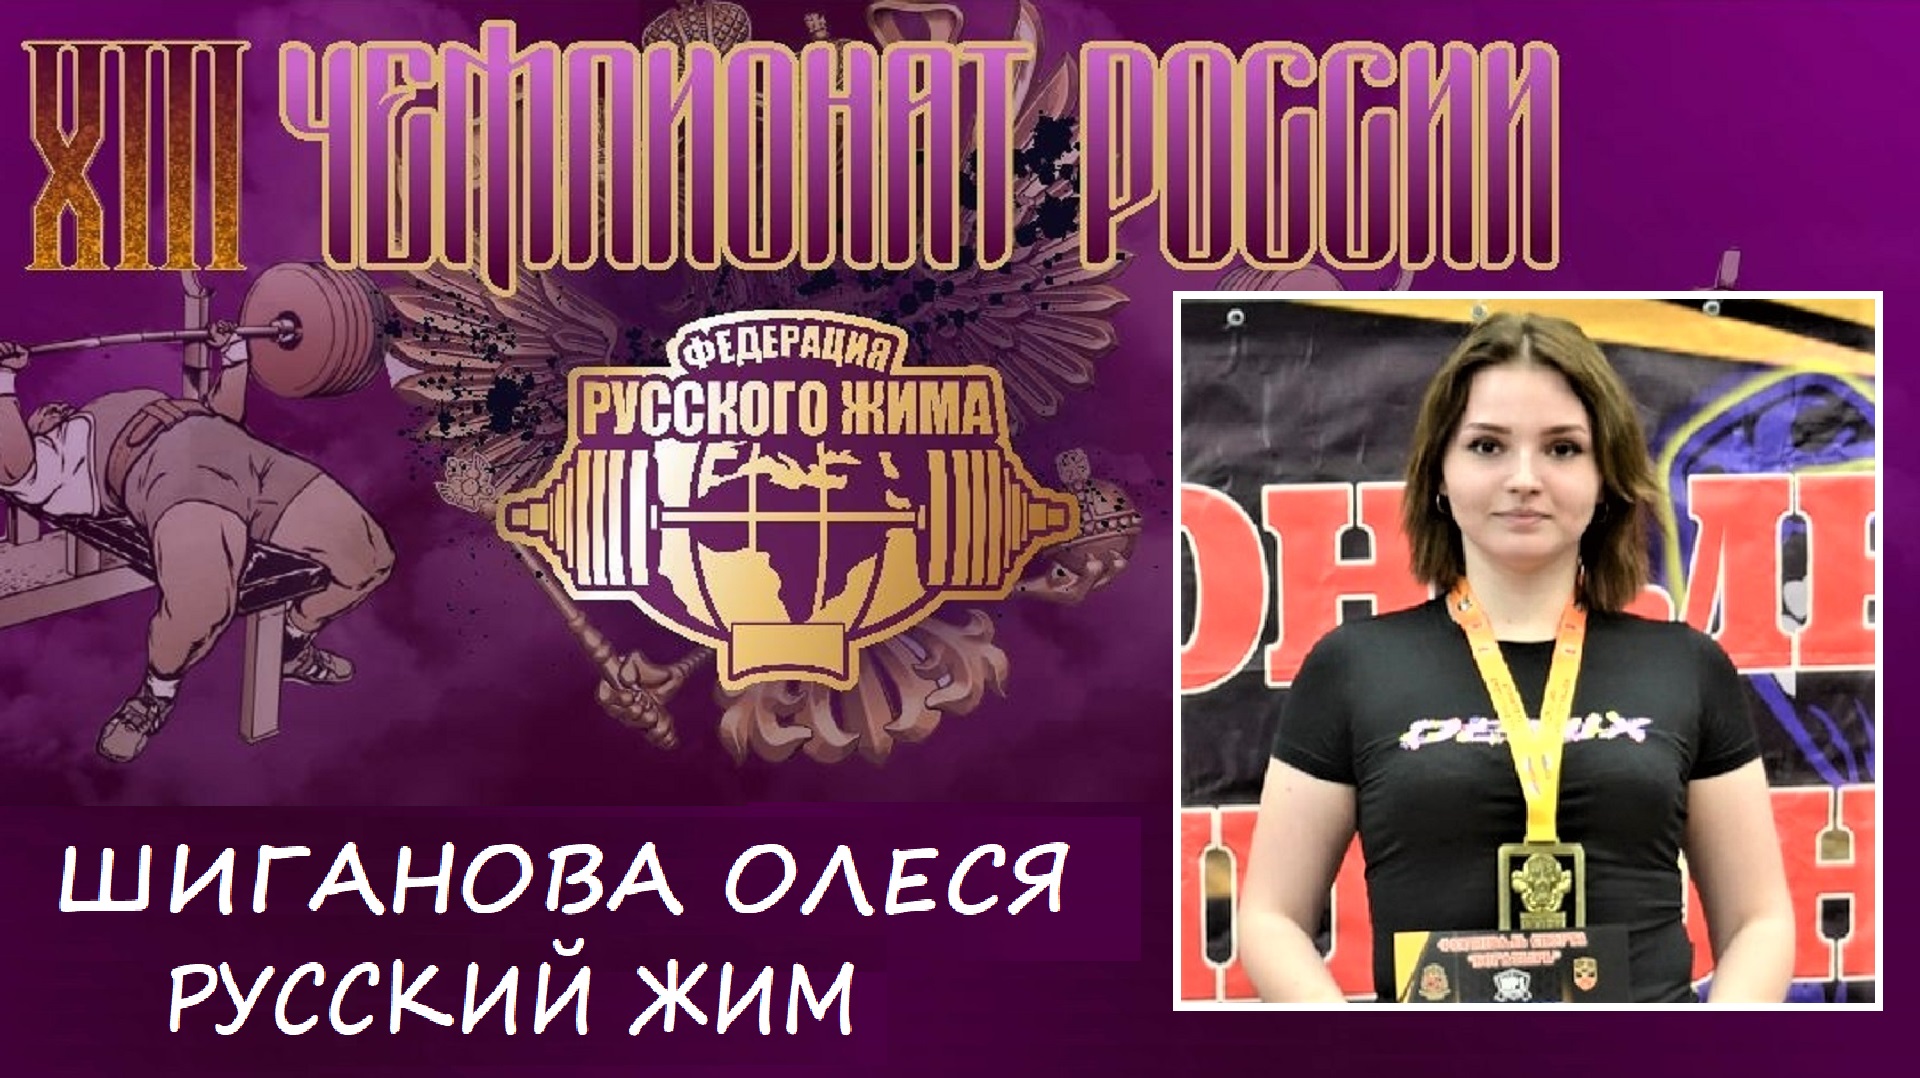 Шиганова Олеся. РУССКИЙ ЖИМ. 35 кг на 90 повторений. 3 место.